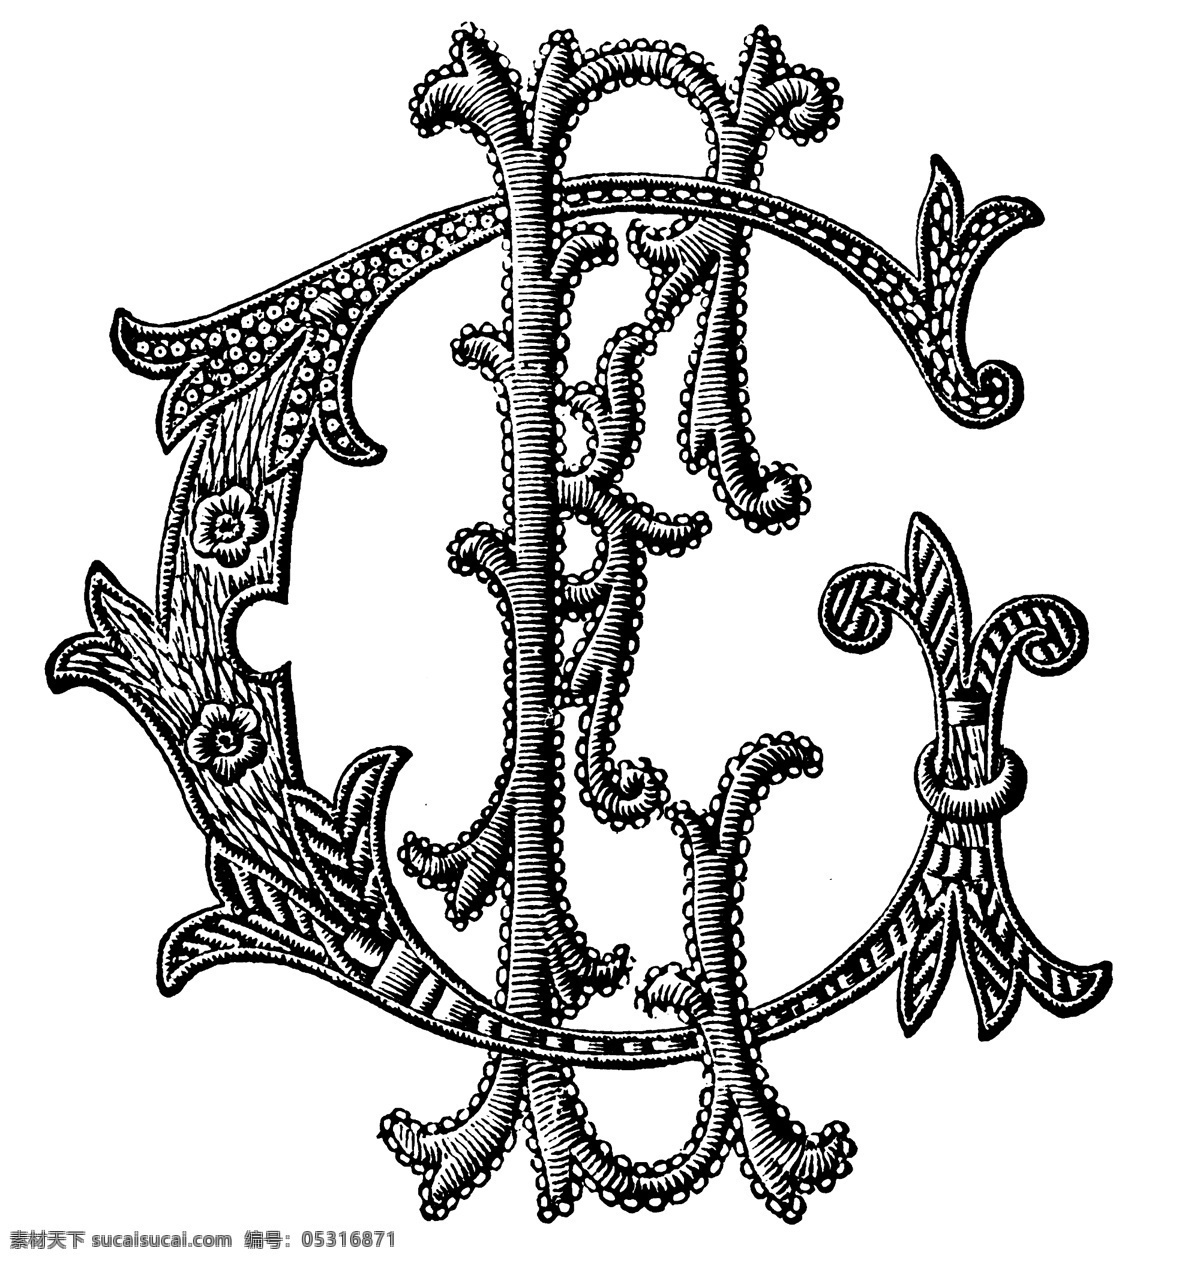 黑白 花边 纹样 英文 字母 植物 线条 花卉 服装边饰 刺绣 英文字母 绳子 绘画书法 文化艺术